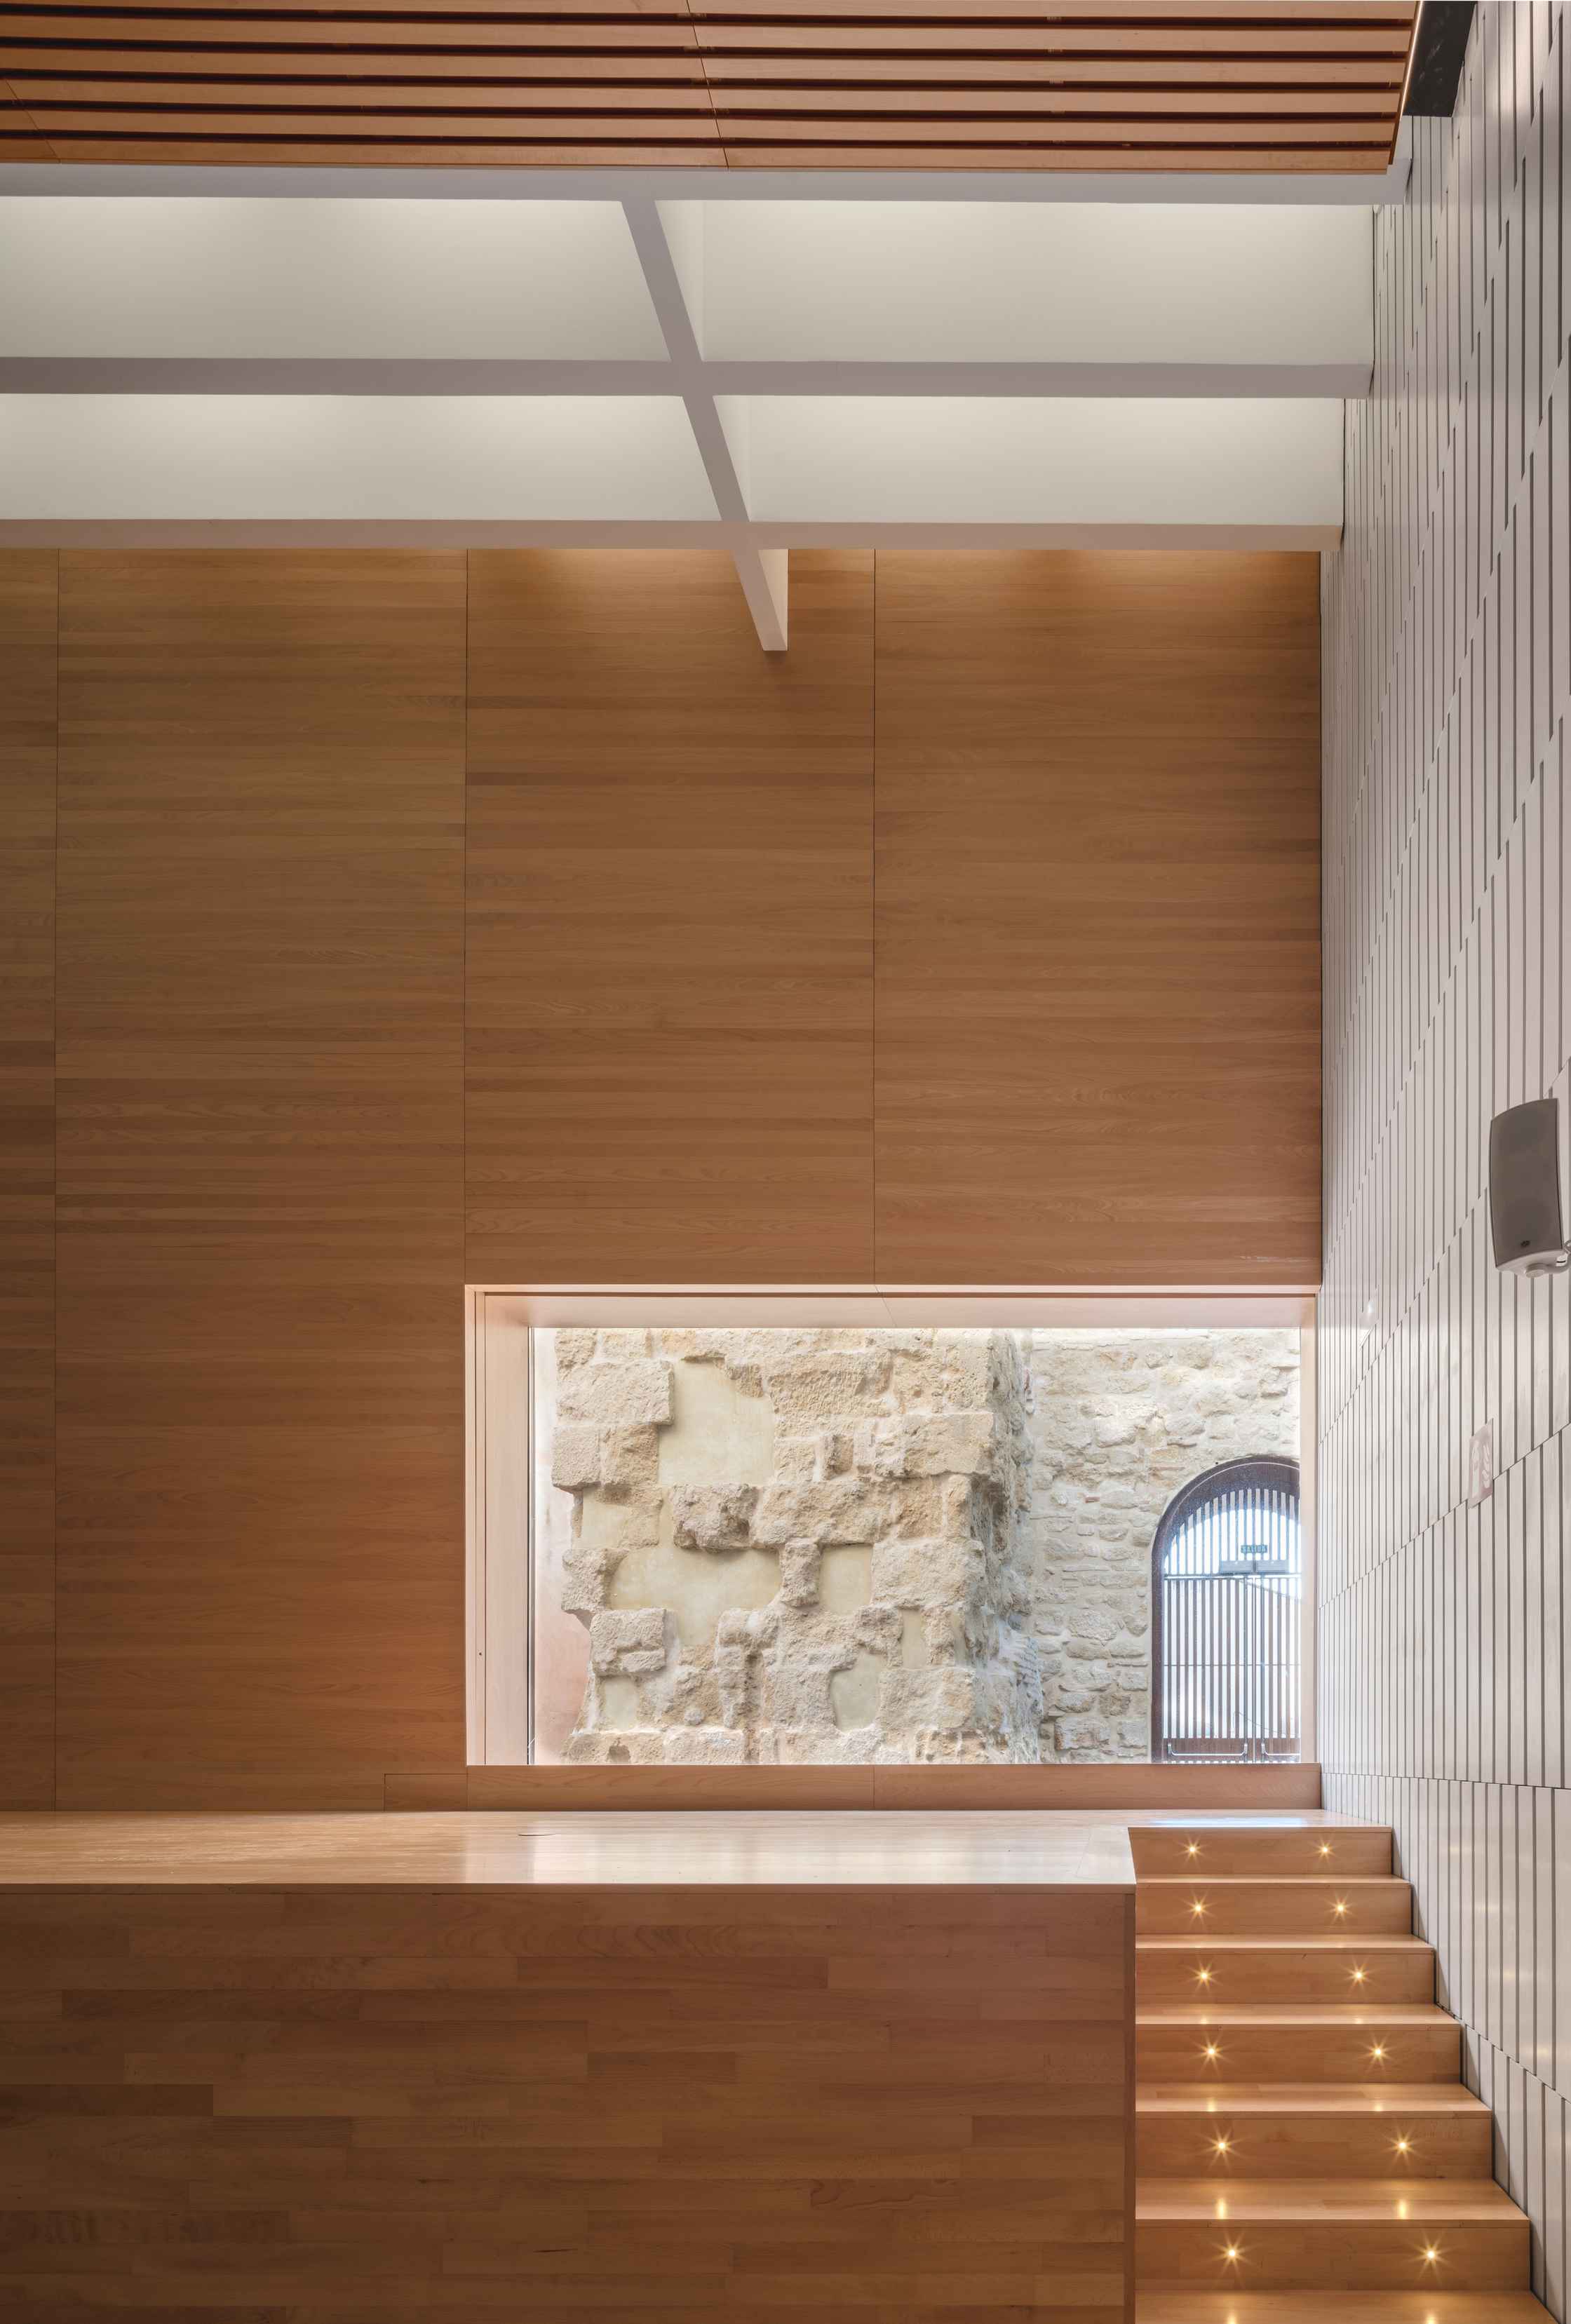 Auditorio del Palacio de Congresos, un espacio de arquitectura contemporánea en pleno corazón de la judería, junto a la Mezquita-Catedral de Córdoba (España). Proyecto: LAP arquitectos.